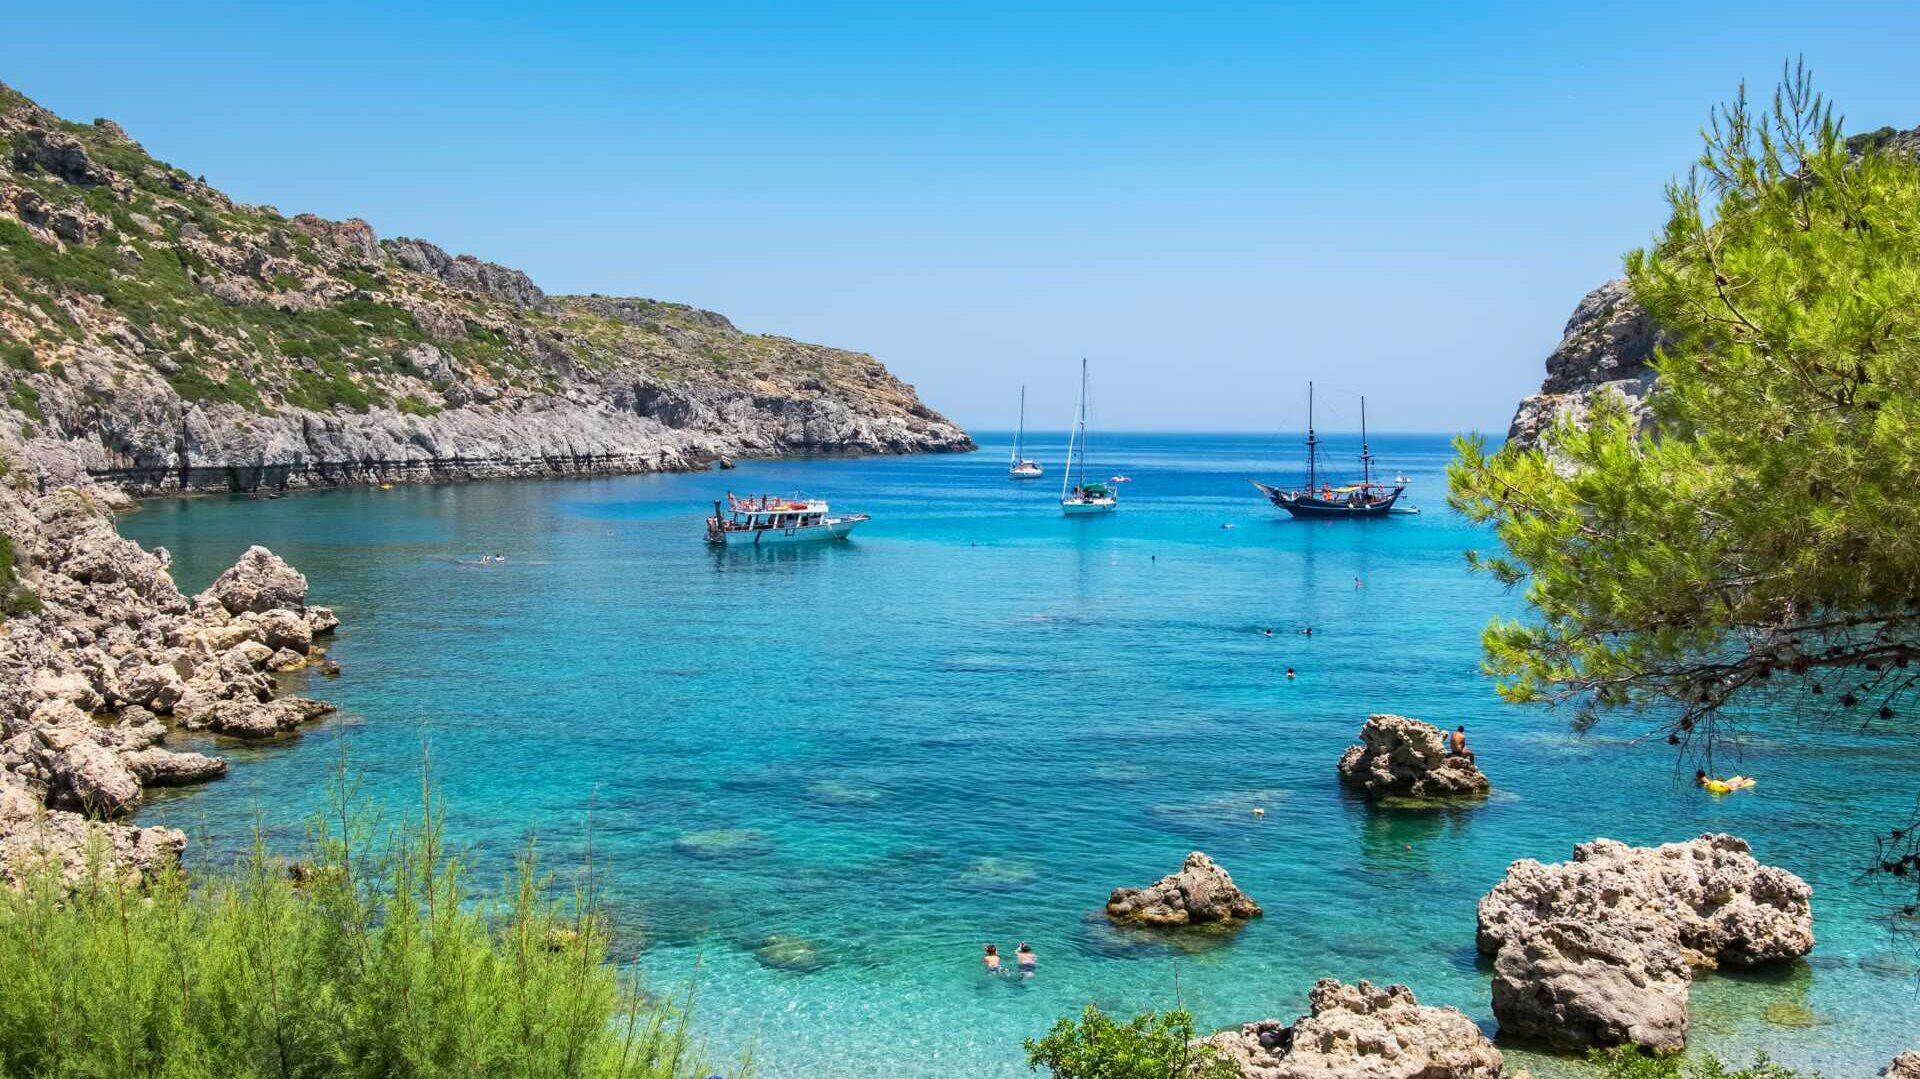 Bilde av nydelig blått hav på en restplass til hellas. på bilde ser du vakker gresk natur og krystallblått havn. Enten du tar turen til Rhodos, kreta eller Athen er mulighetene mange.